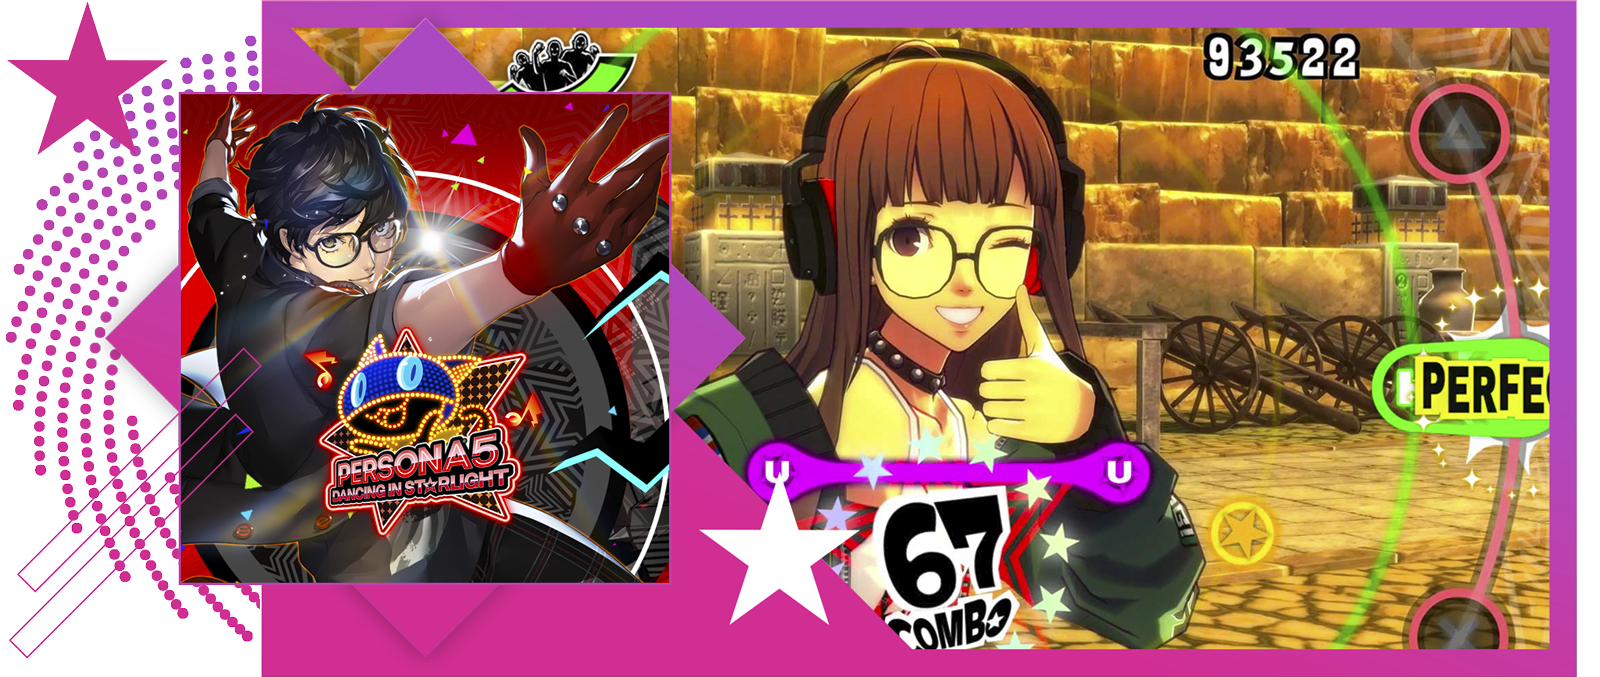 Les meilleurs jeux de rythme - Illustration principale et de gameplay de Persona 5: Dancing in Starlight